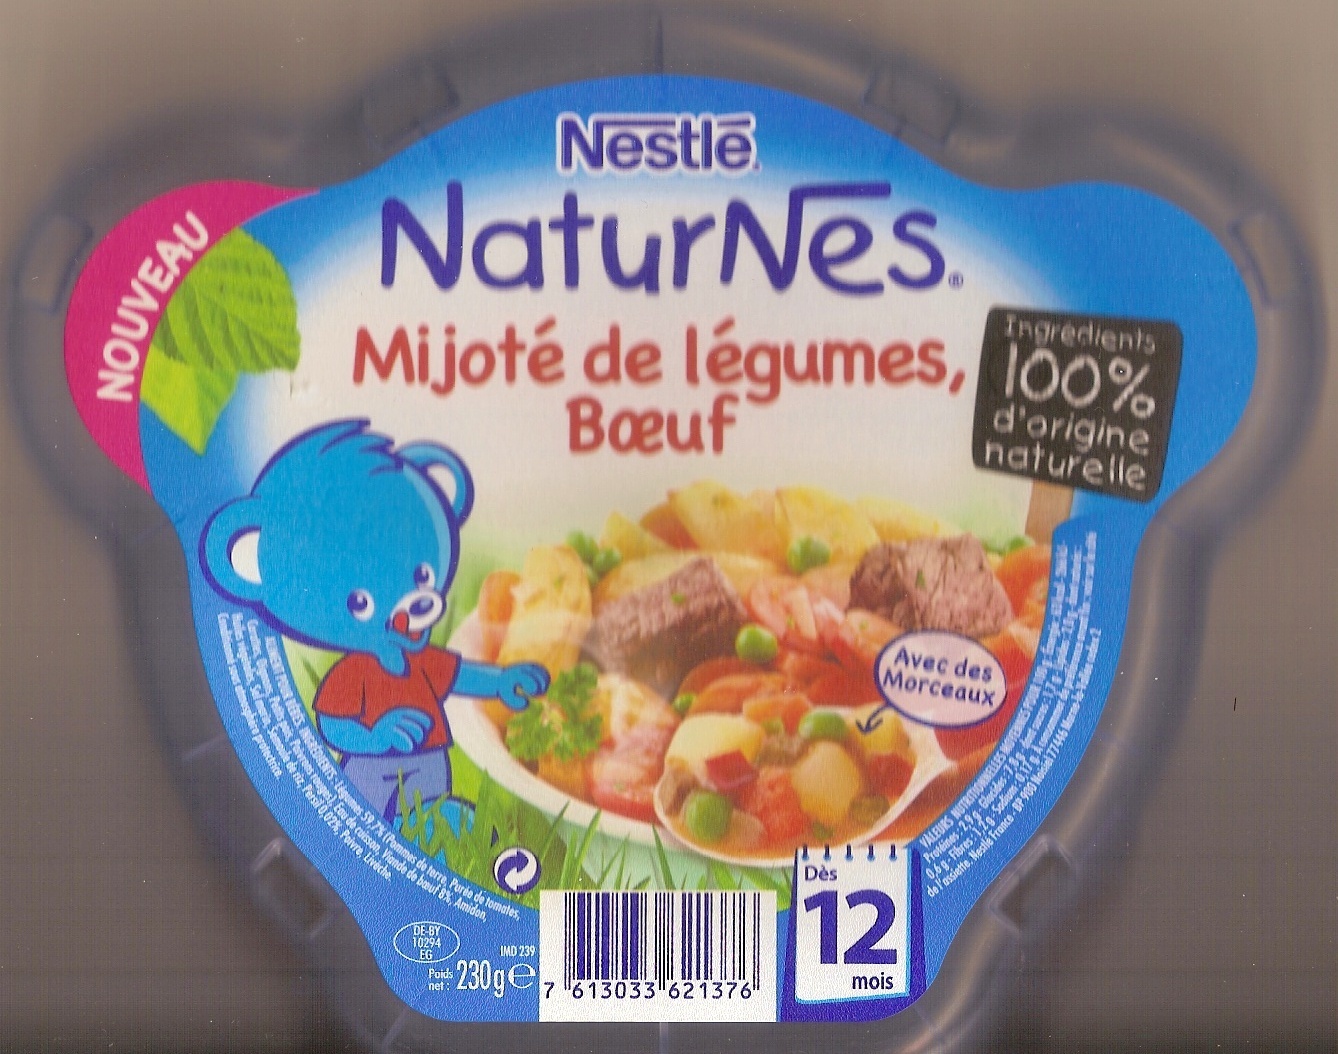 NaturNes Mijoté de légumes, boeuf - Product - fr